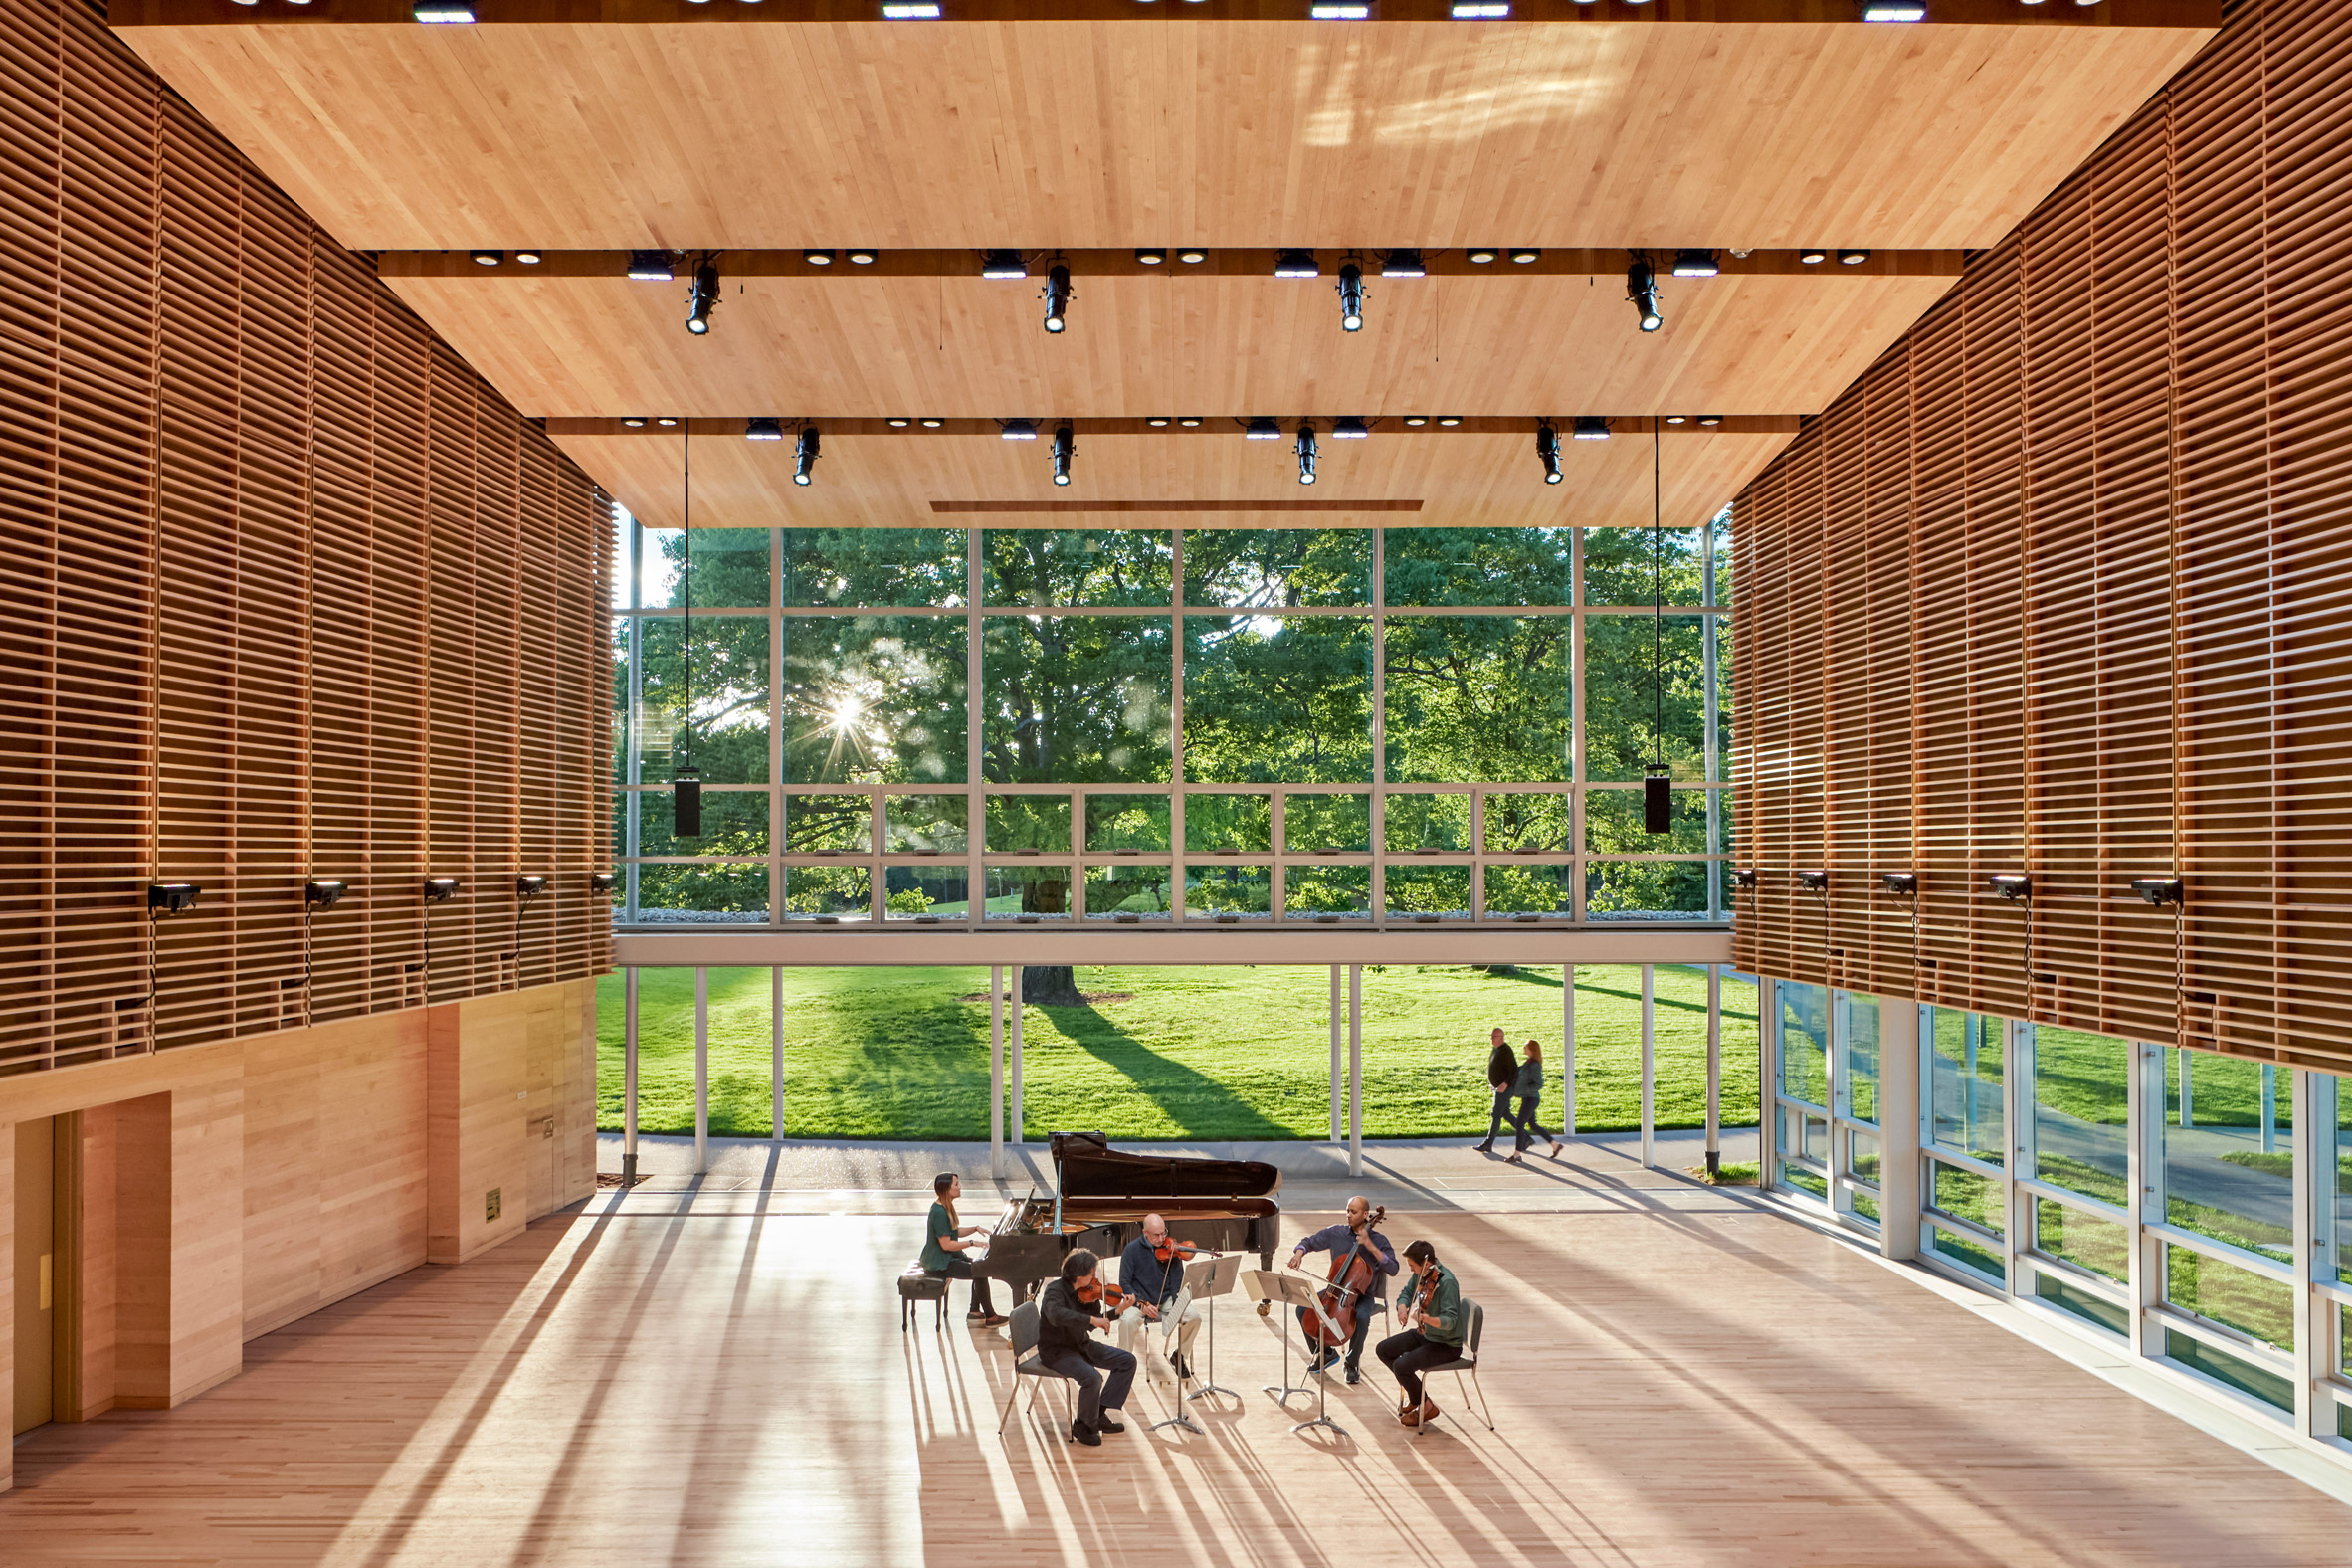 William Rawn designs cedar-clad pavilions for Tanglewood campus